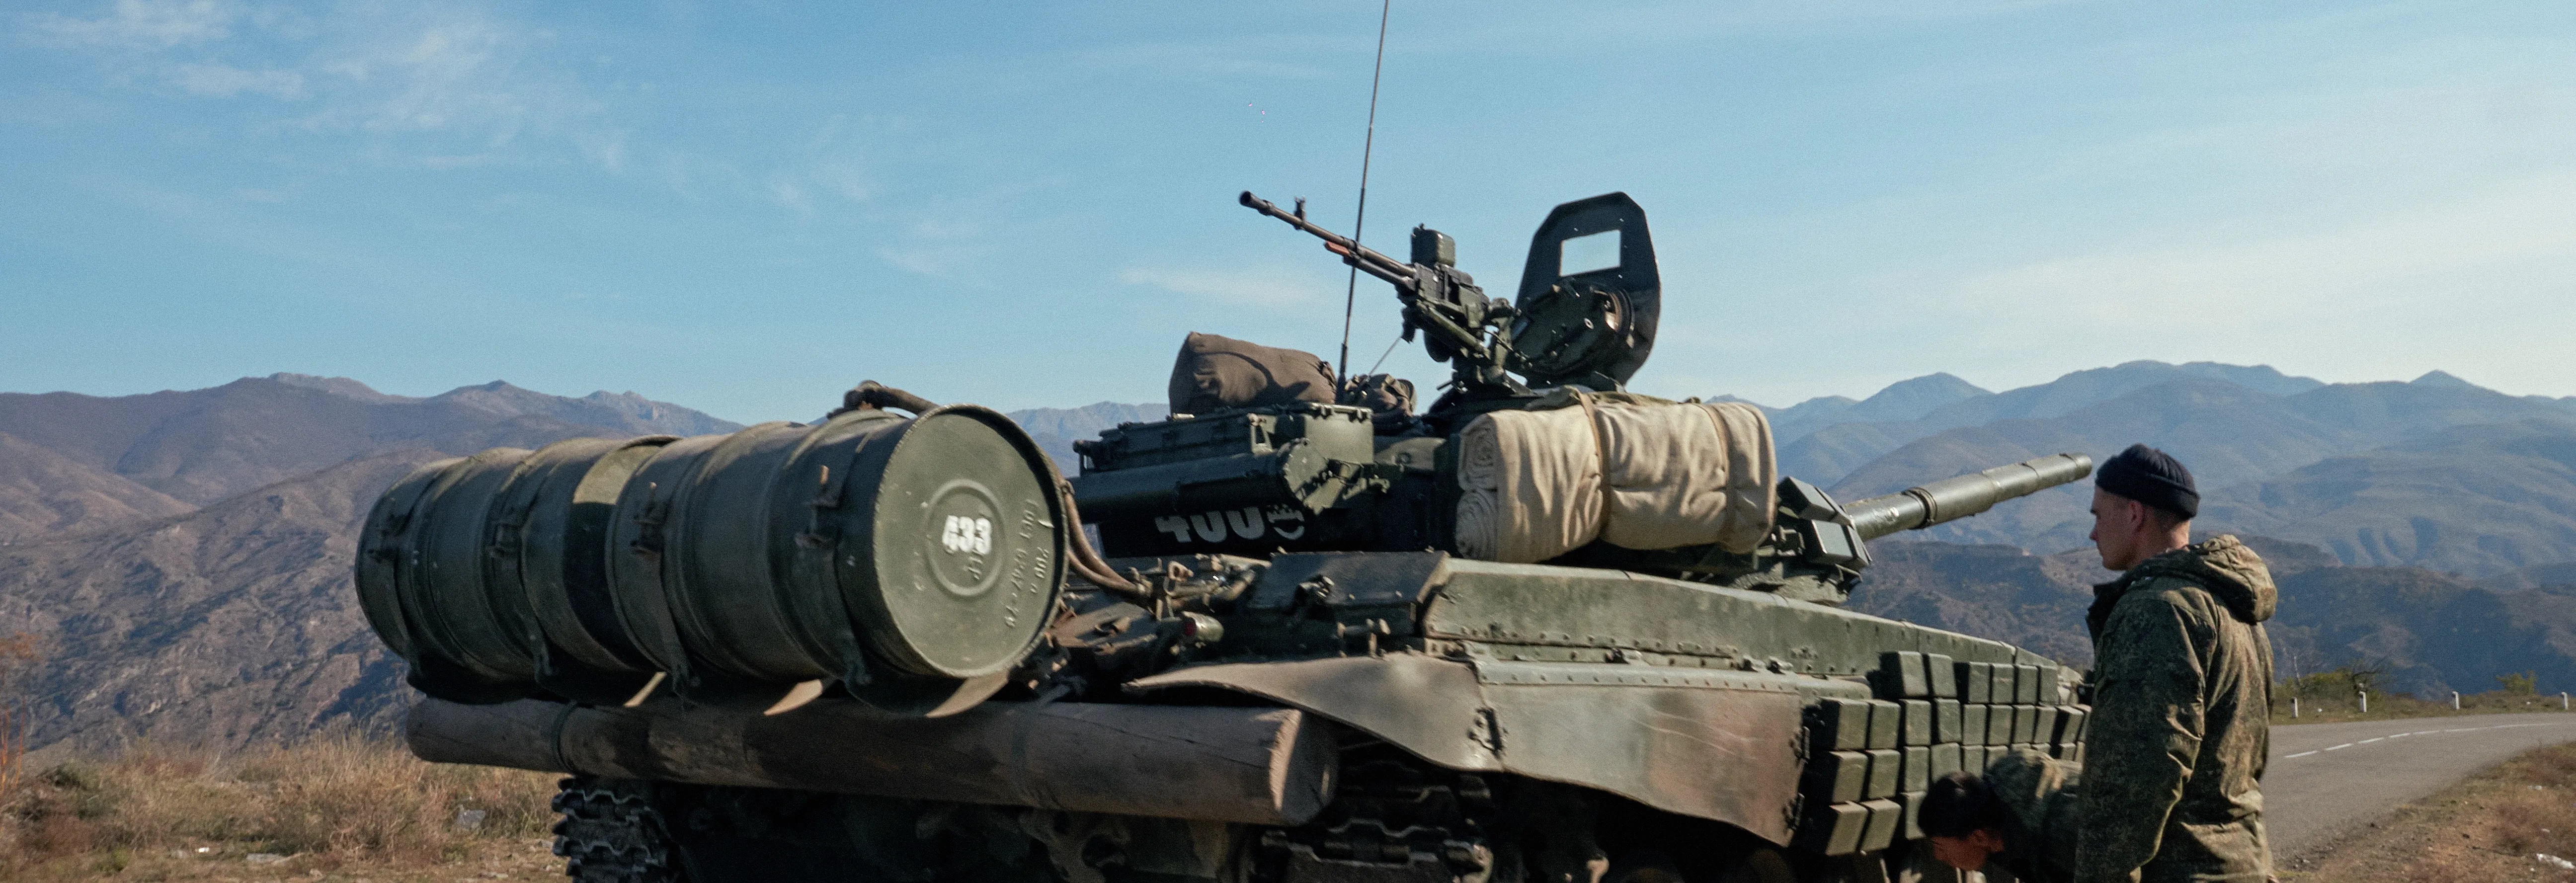 Končí mise, která selhala. Ruské síly opouštějí Náhorní Karabach